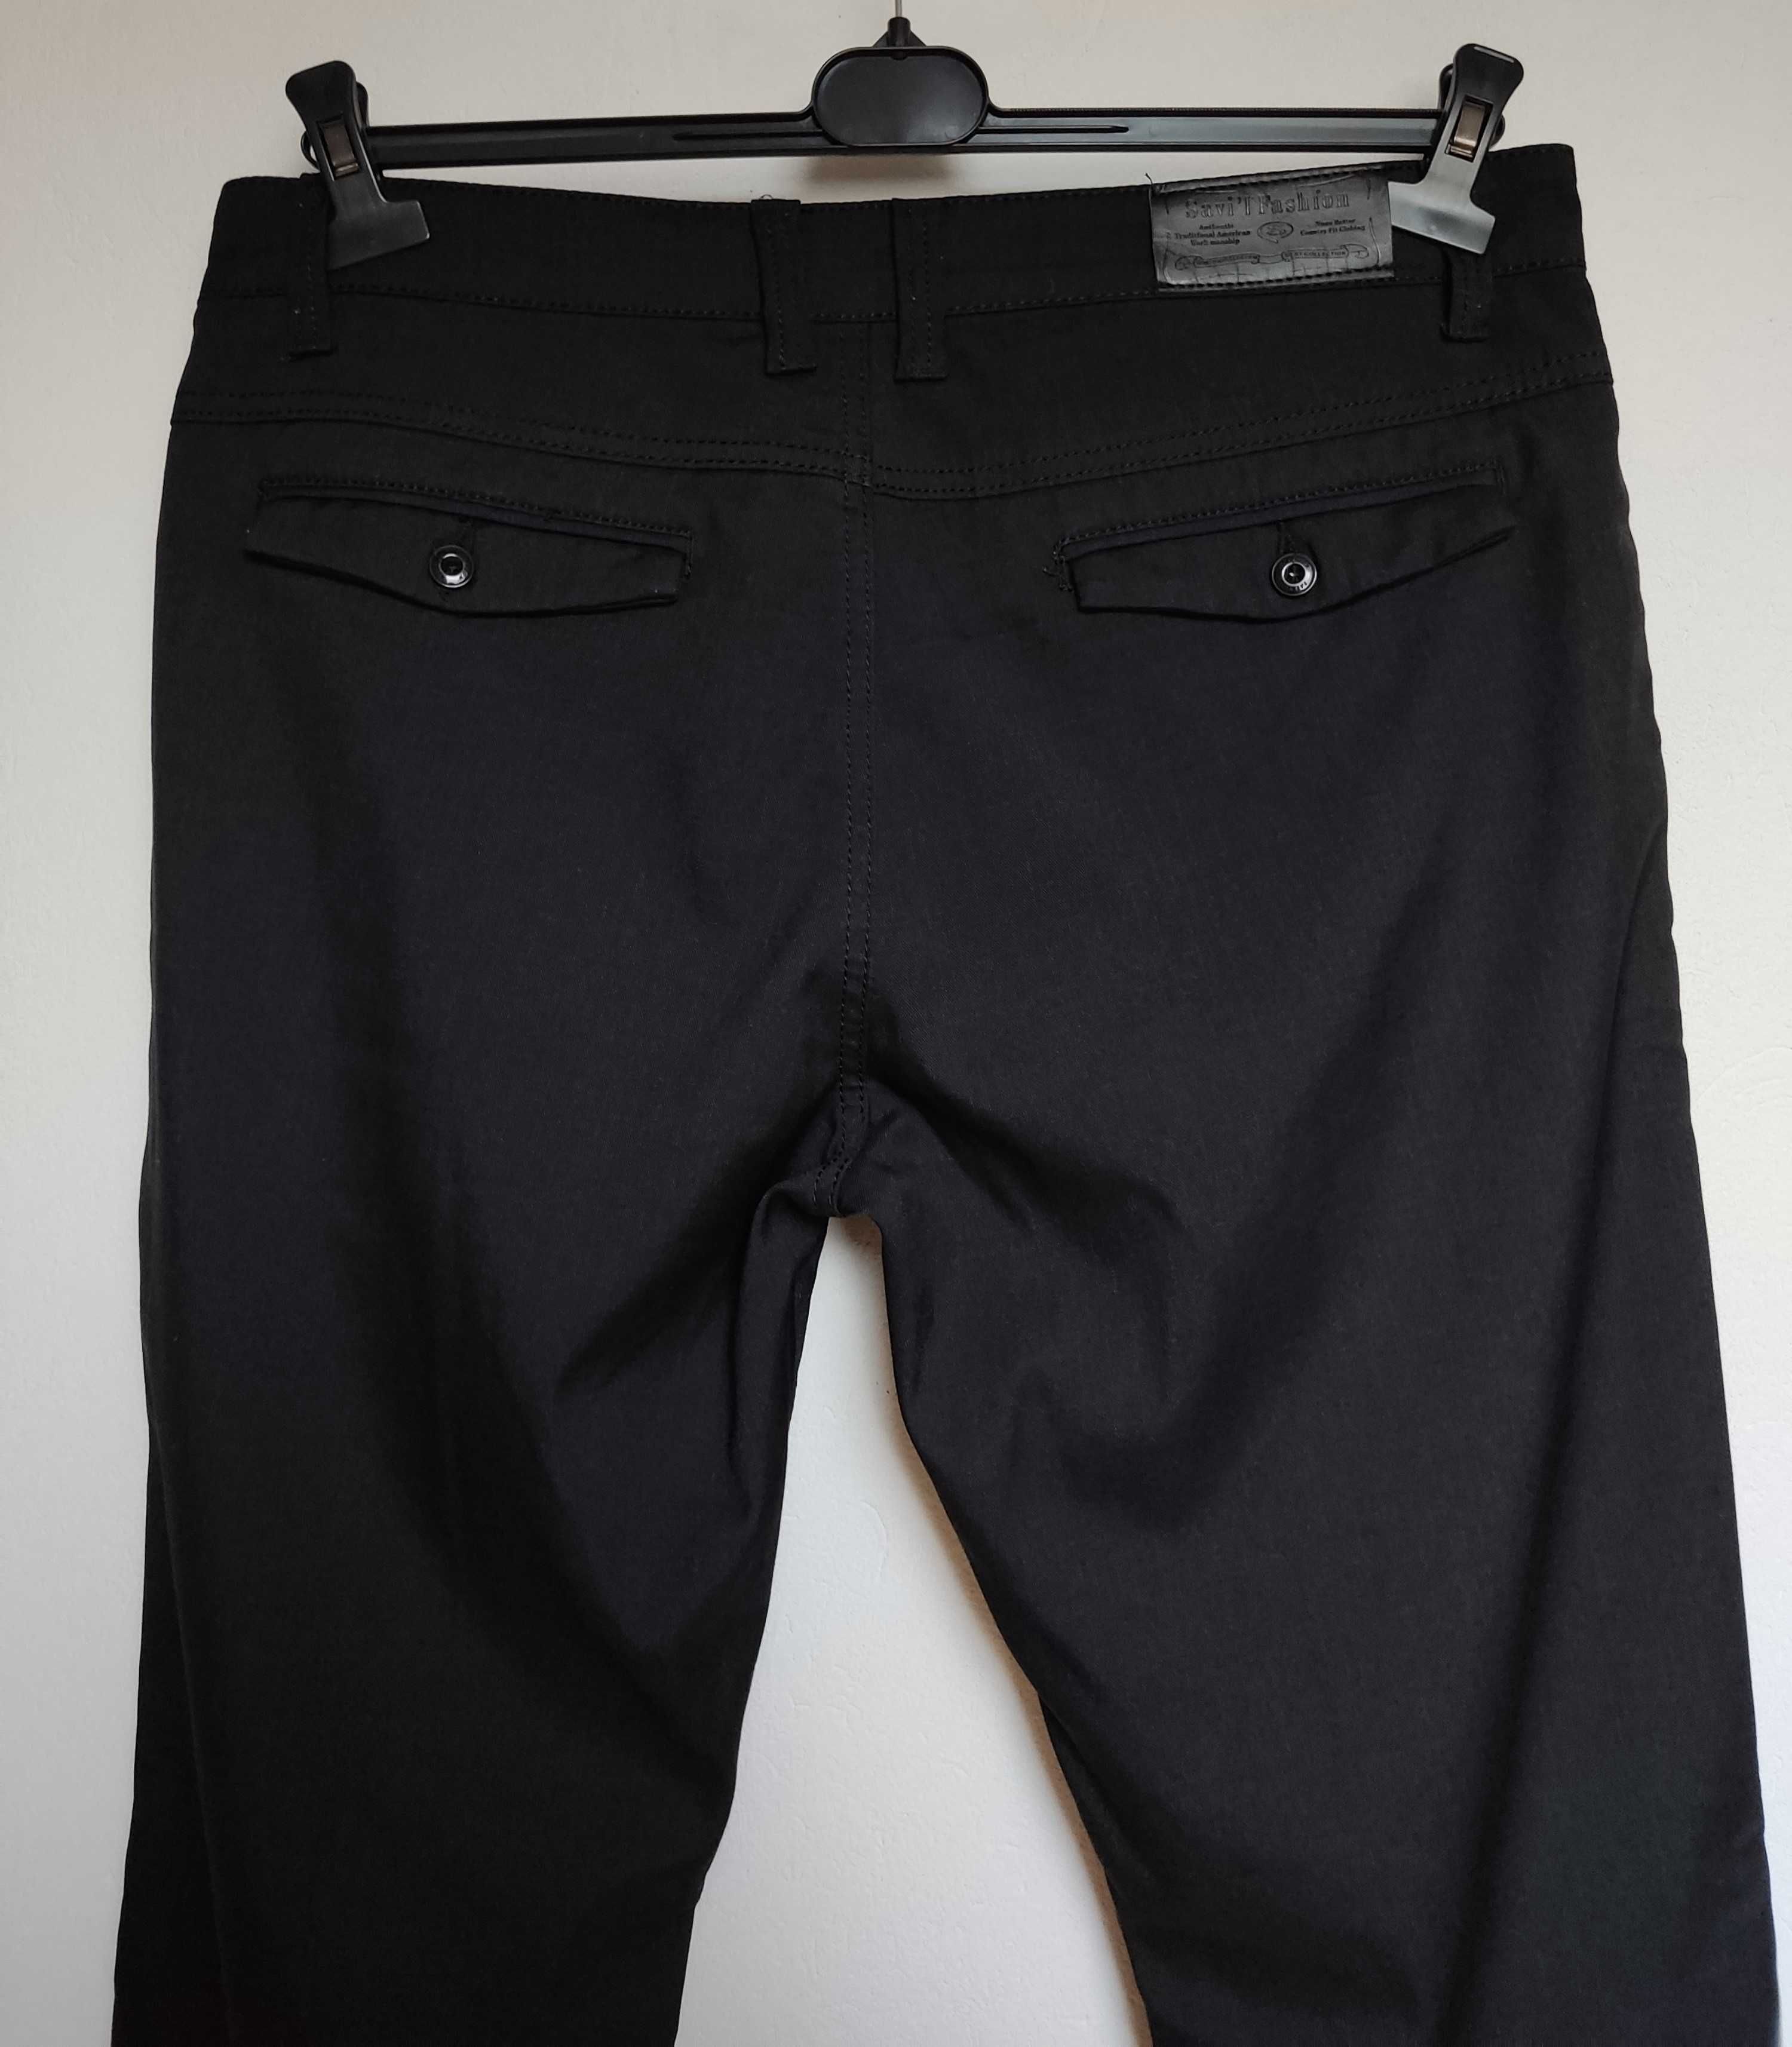 Spodnie męskie czarne materiałowe bawełniane eleganckie gładkie W35L32